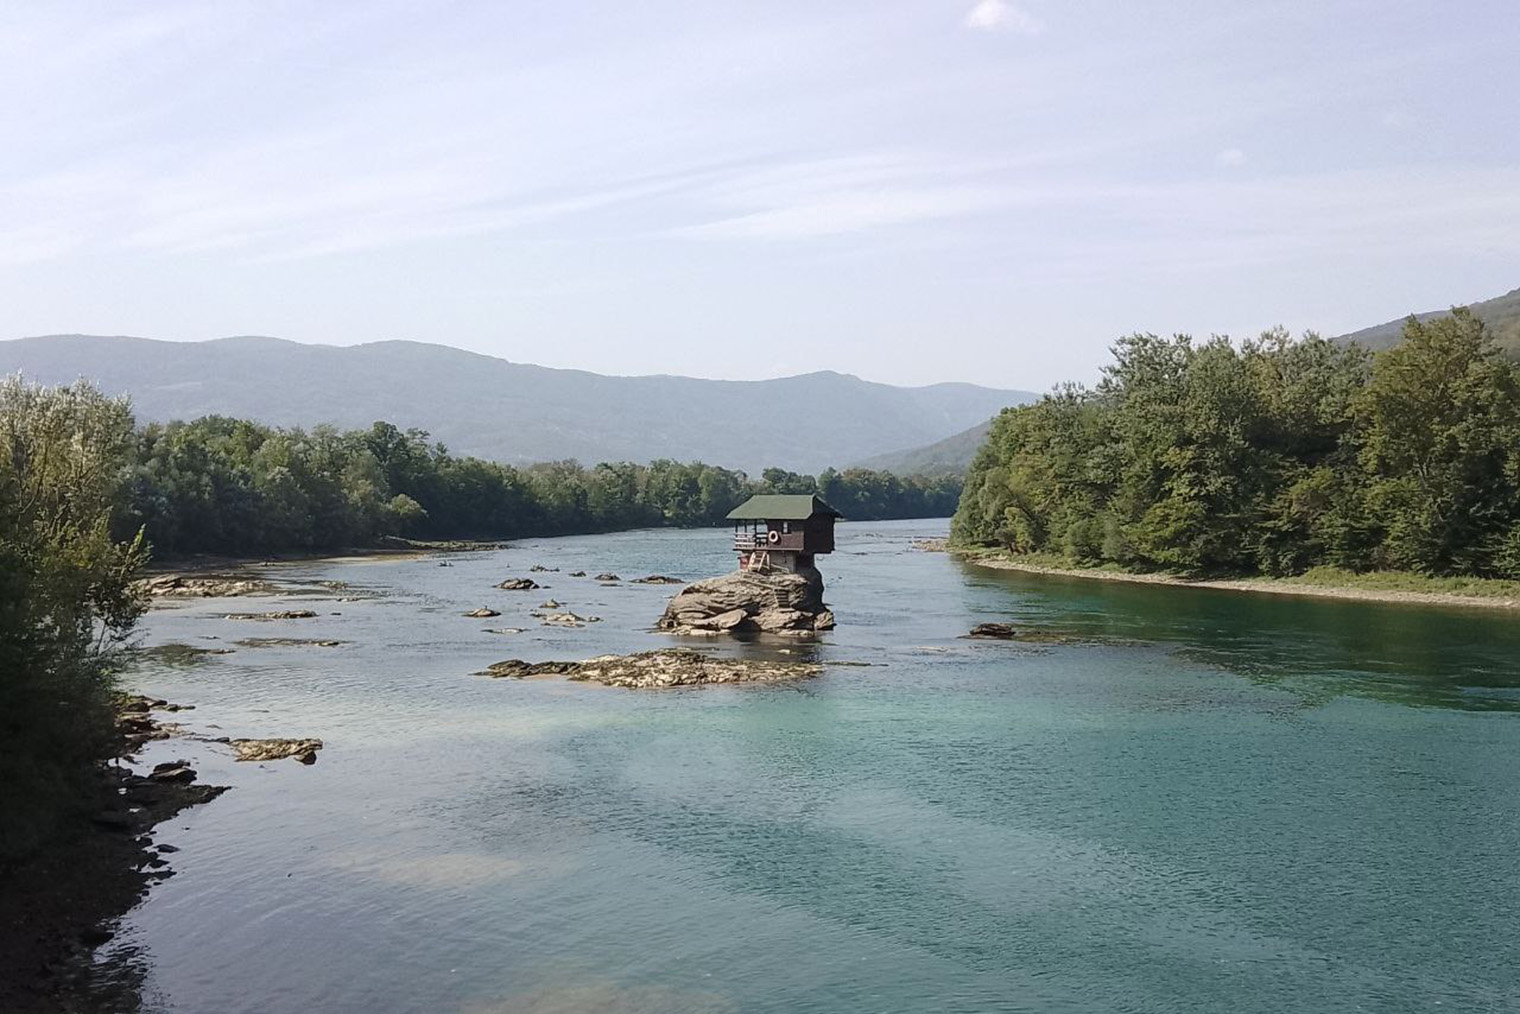 По дороге заехали посмотреть на домик на реке Дрине — по одной из легенд, он когда⁠-⁠то был пограничным пунктом между Сербией и Боснией